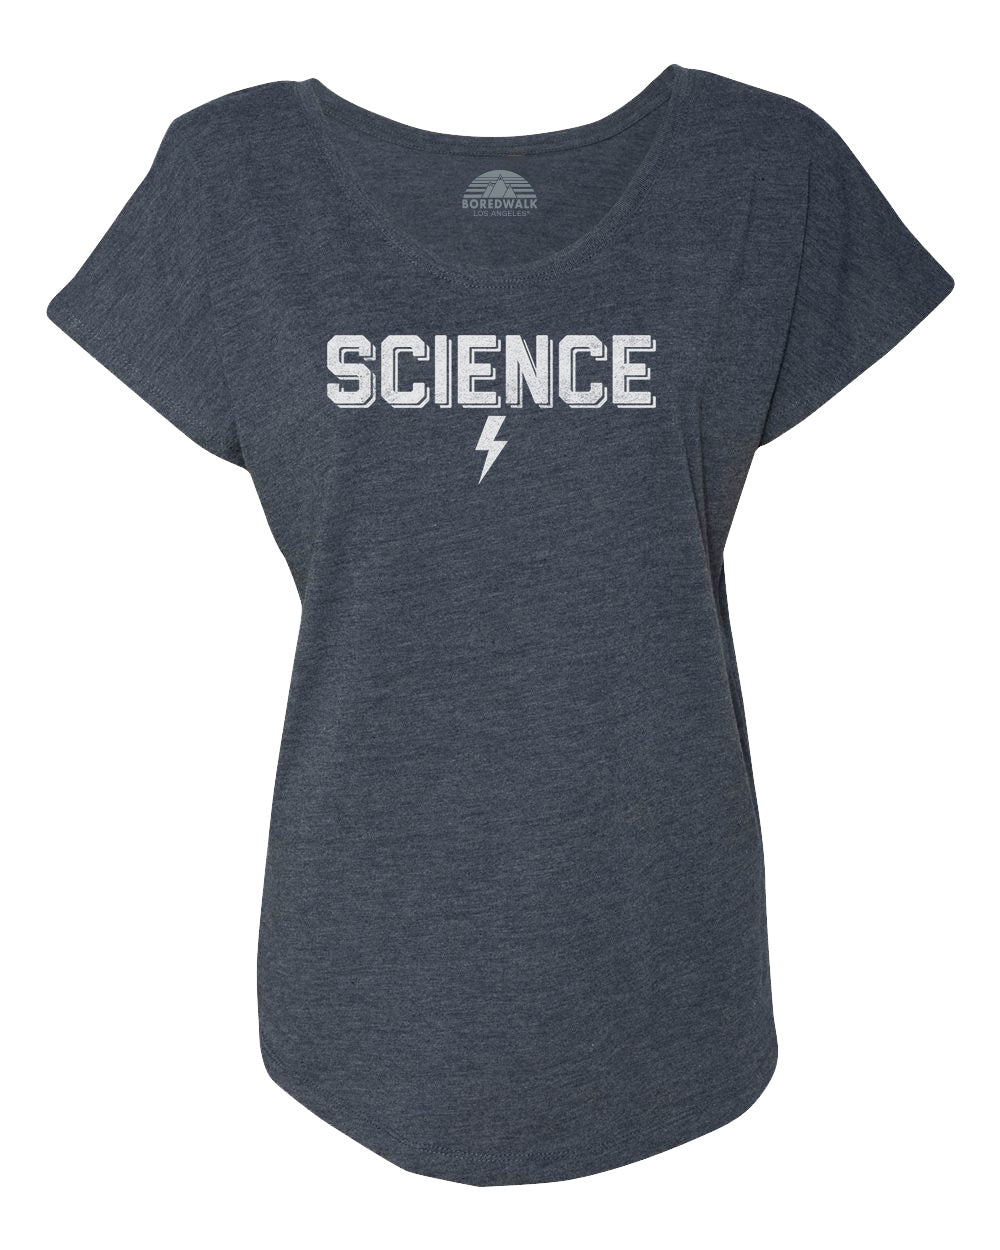 Women's Team Science Scoop Neck T-Shirt